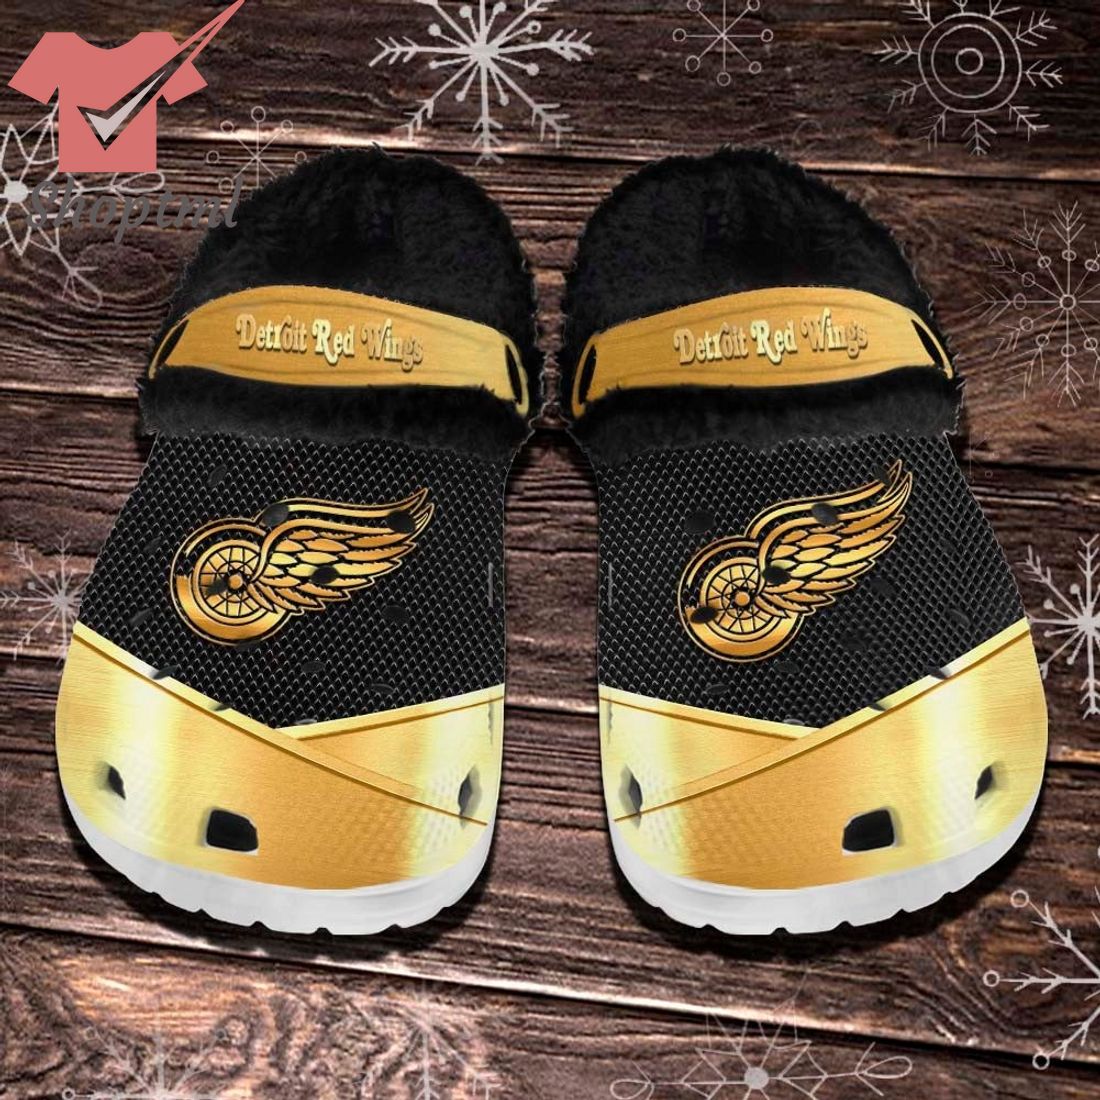 Detroit Red Wings NHL Fleece Crocs Clogs Shoes